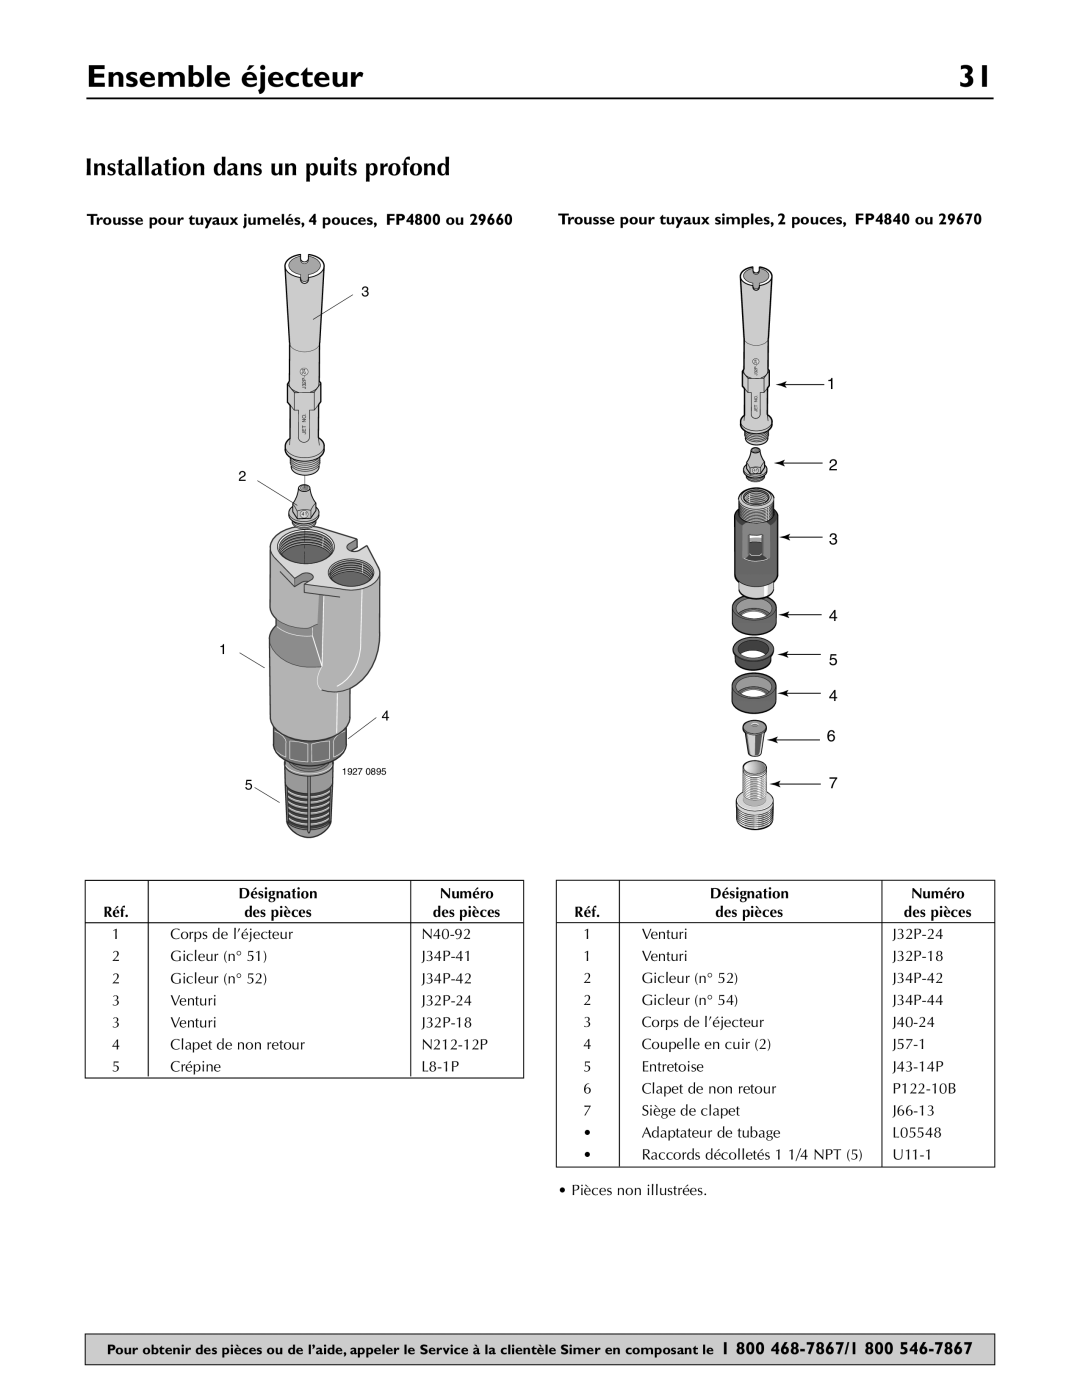 Simer Pumps 3307P Installation dans un puits profond, Ensemble éjecteur, Trousse pour tuyaux jumelés, 4 pouces, FP4800 ou 